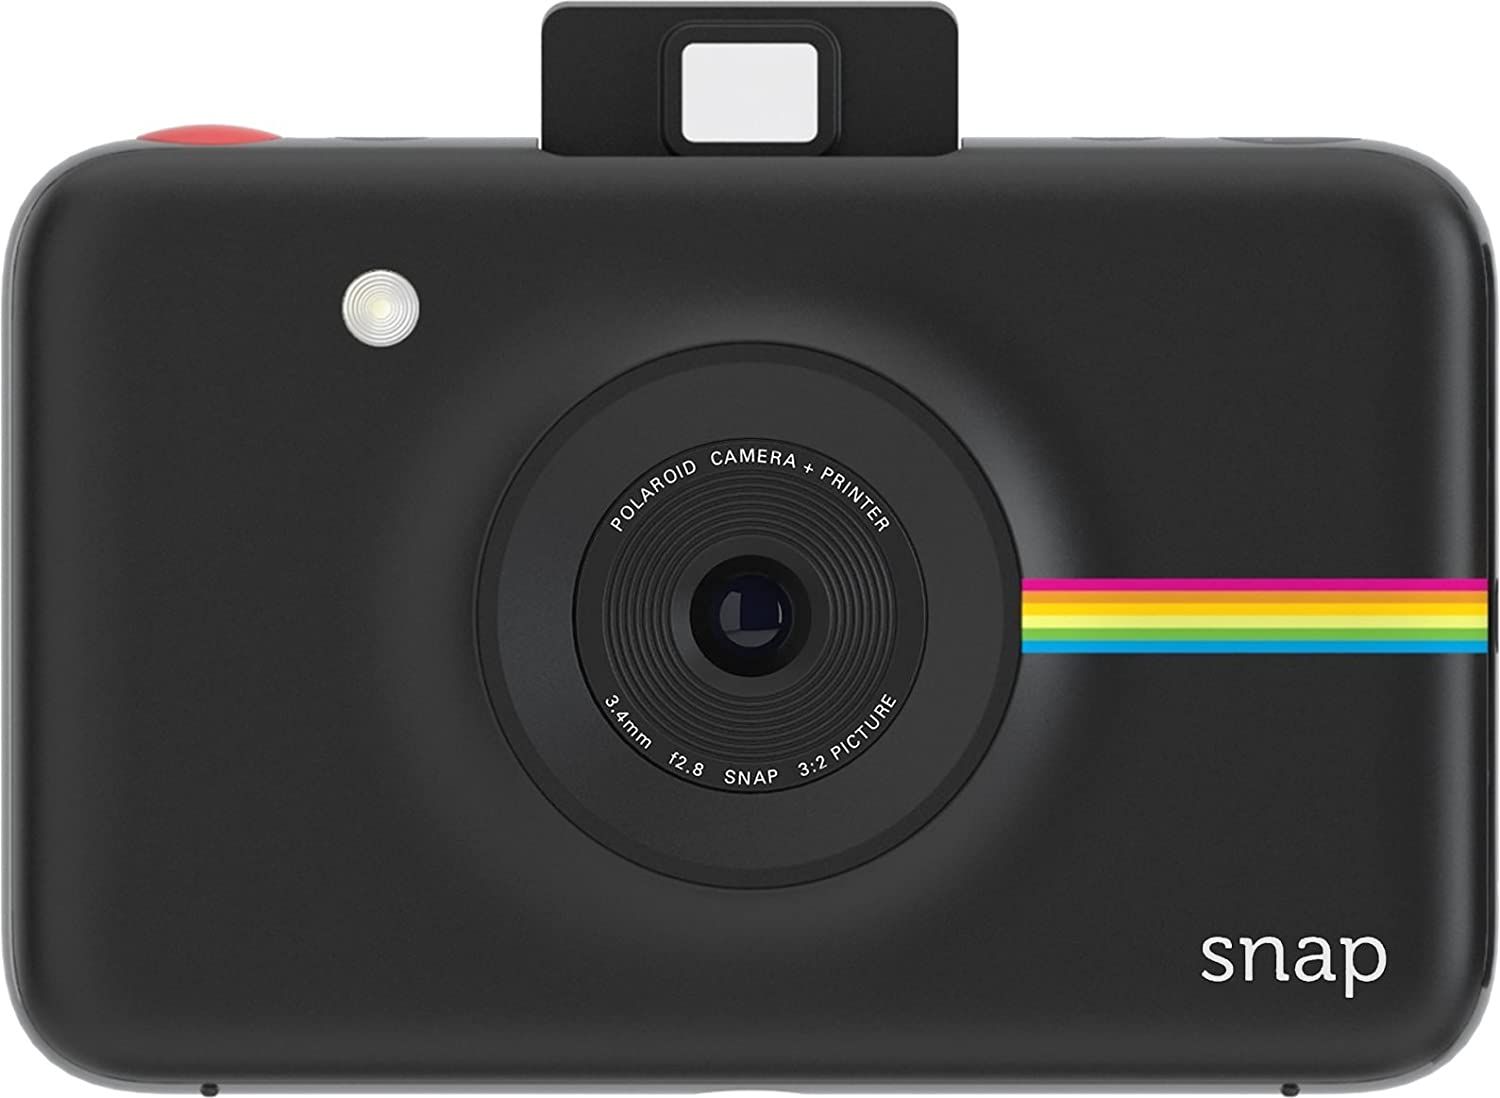 Polaroid Snap Instant Digital Camera 3